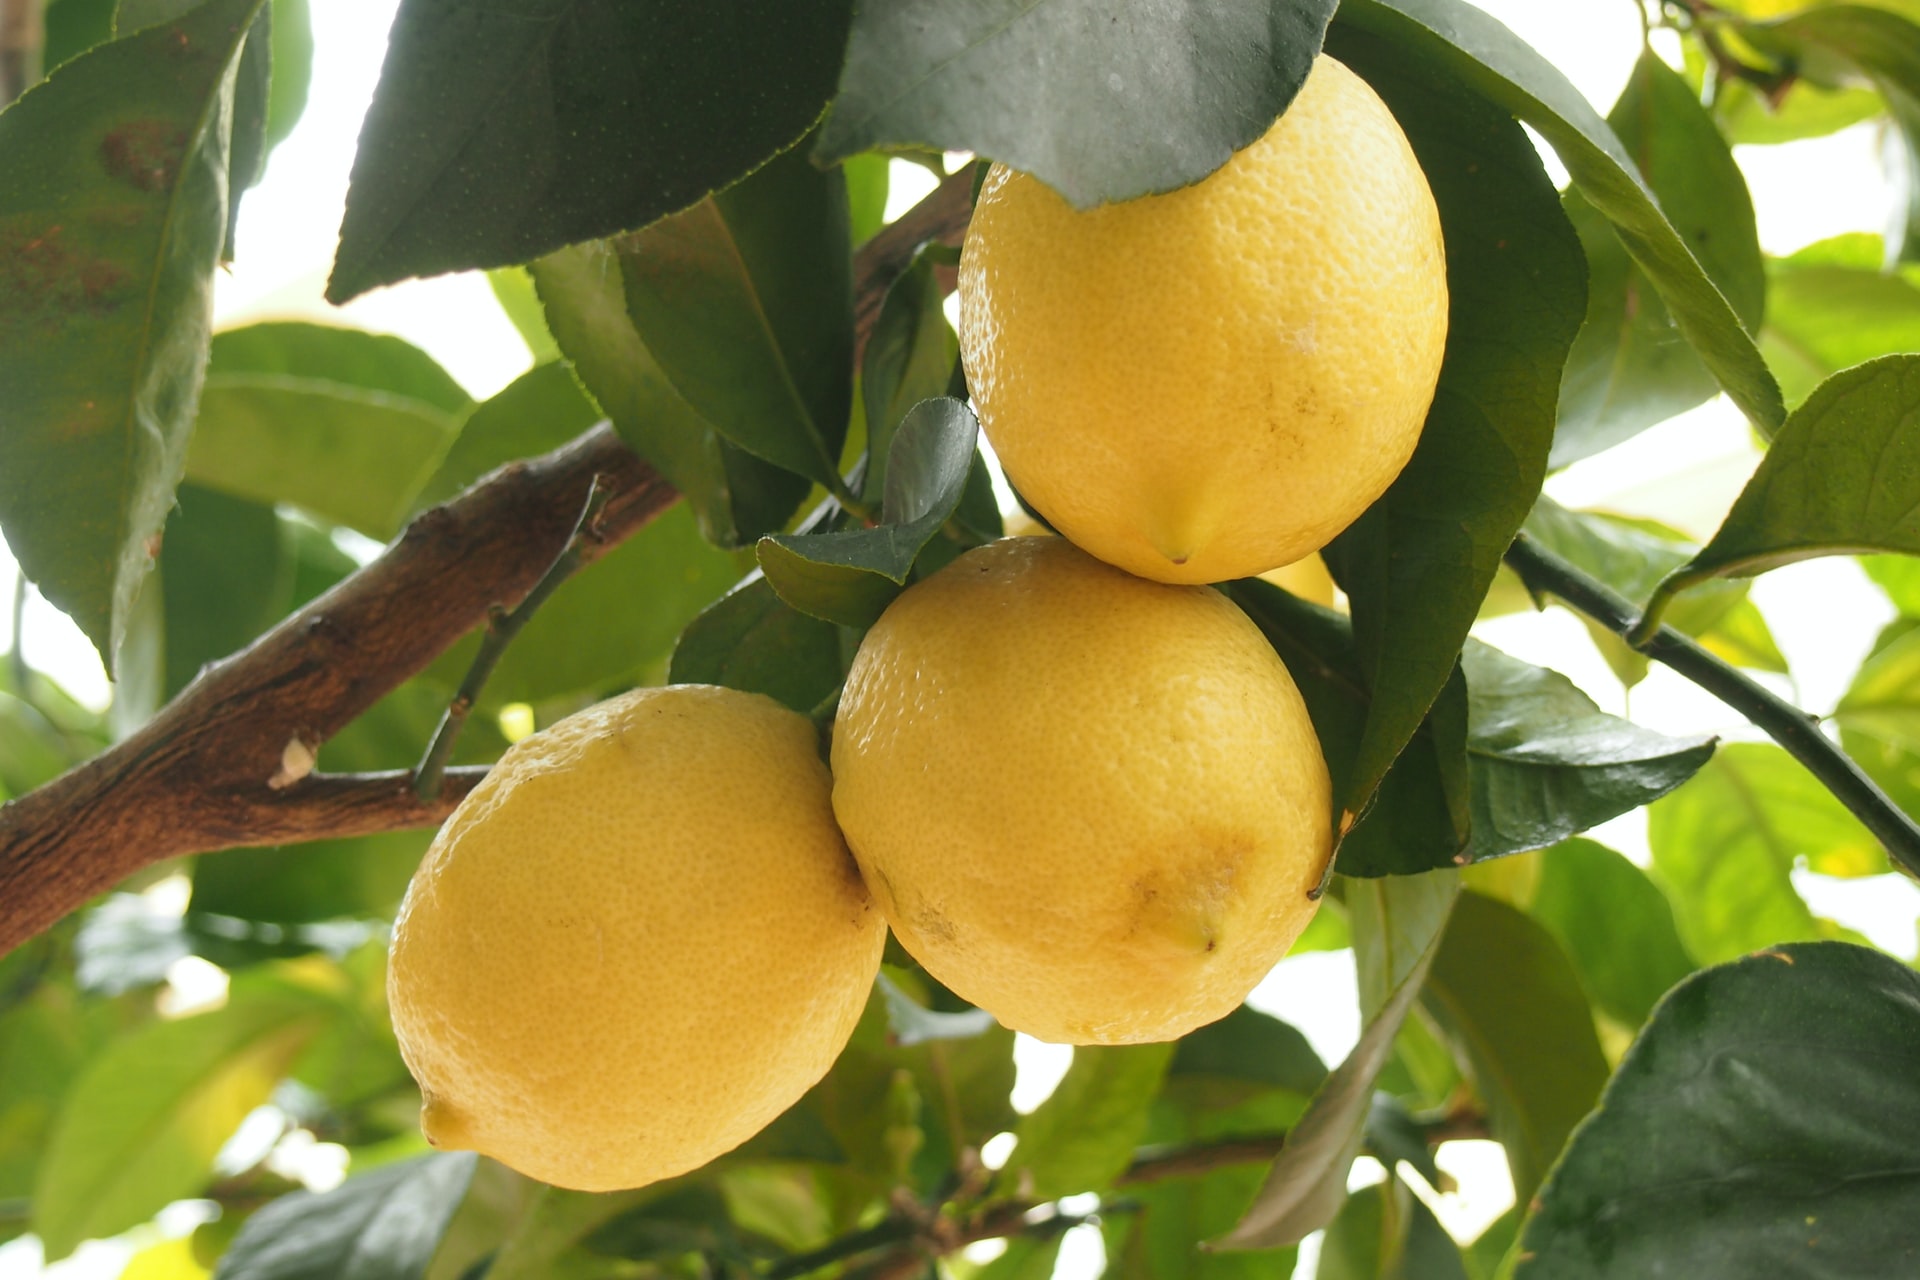 What kind of soil do Lemon Trees need?